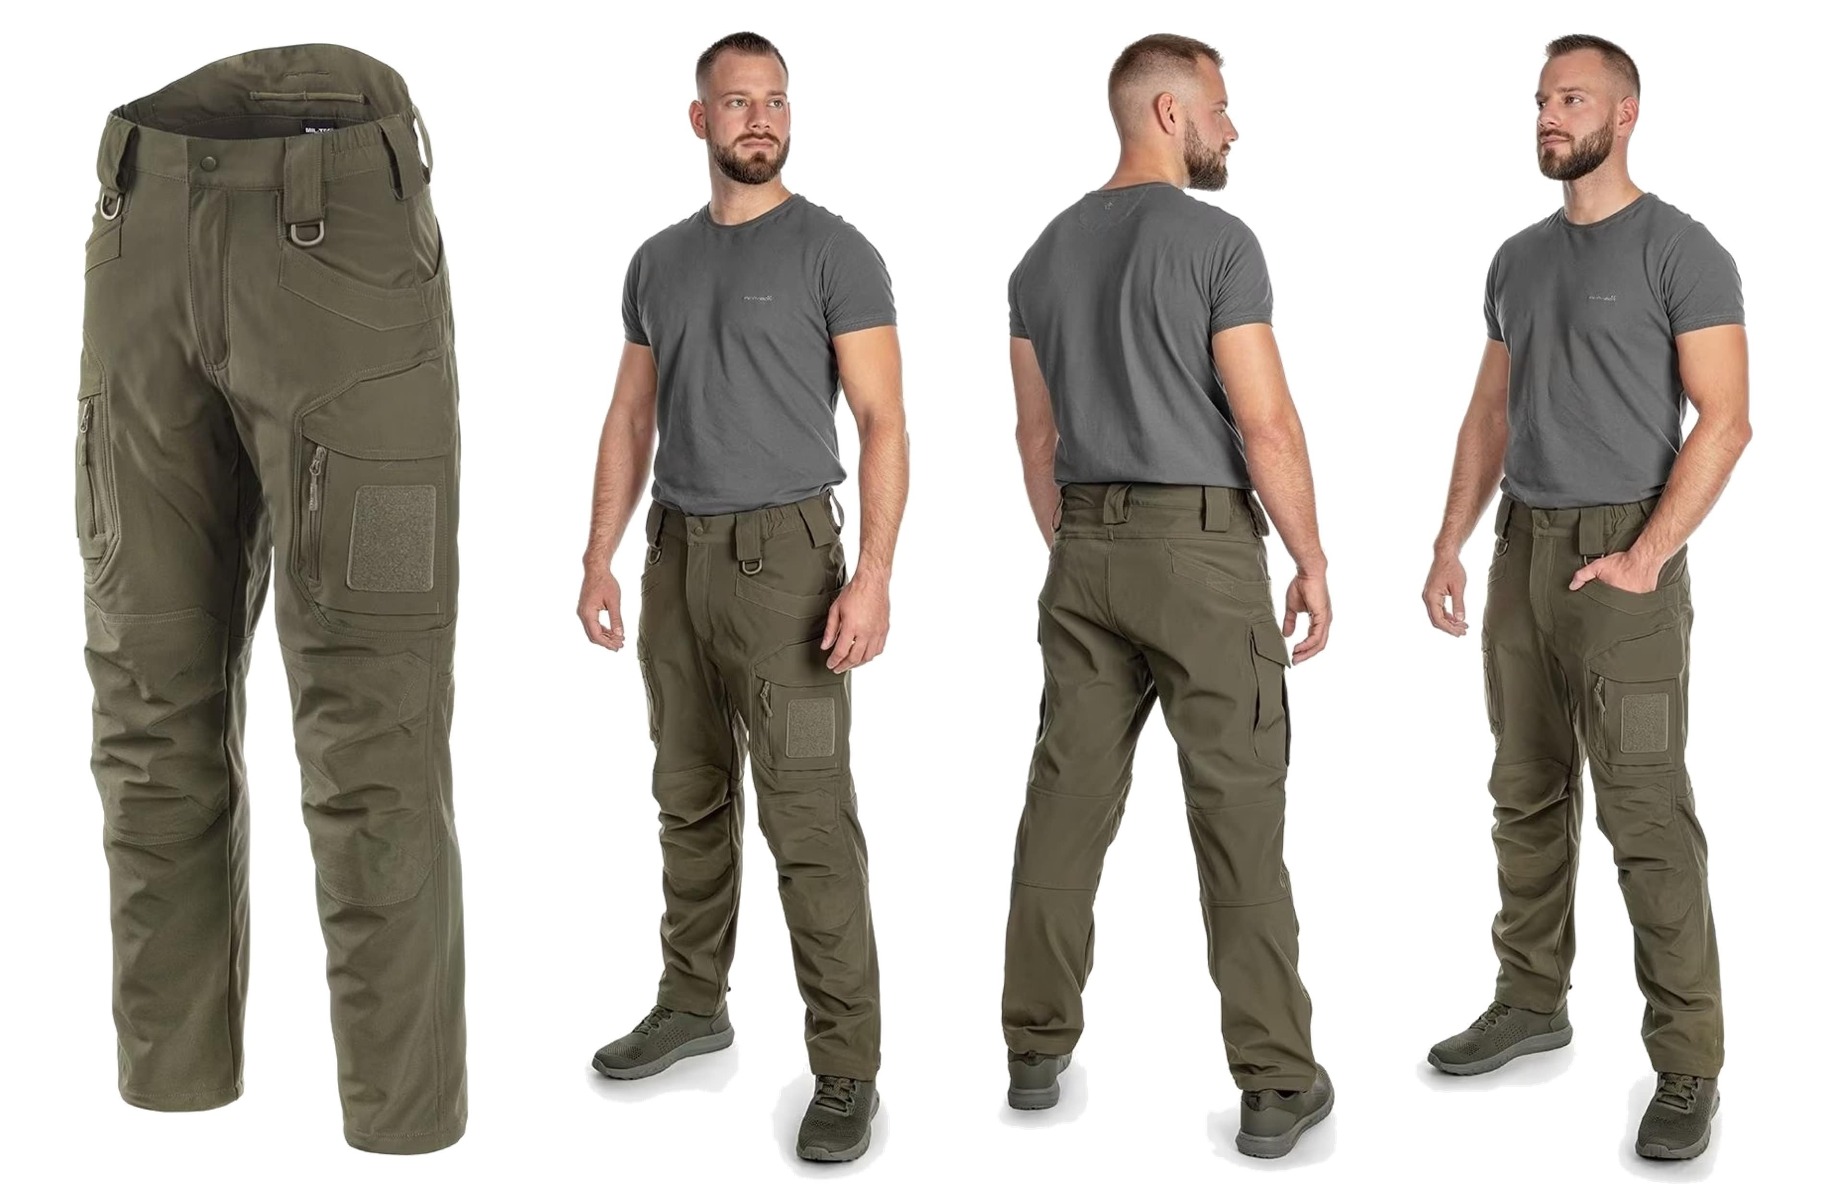 Odkrijte vrhunske vojaške hlače Ranger Softshell model Assault z integriranim flis slojem! Nepremočljive, tople, in trpežne za udobno in zaščiteno doživetje na prostem. Primerne za vojake, policiste, reševalce, planince in športnike. Na voljo v olivni barvi. Opremljen.si